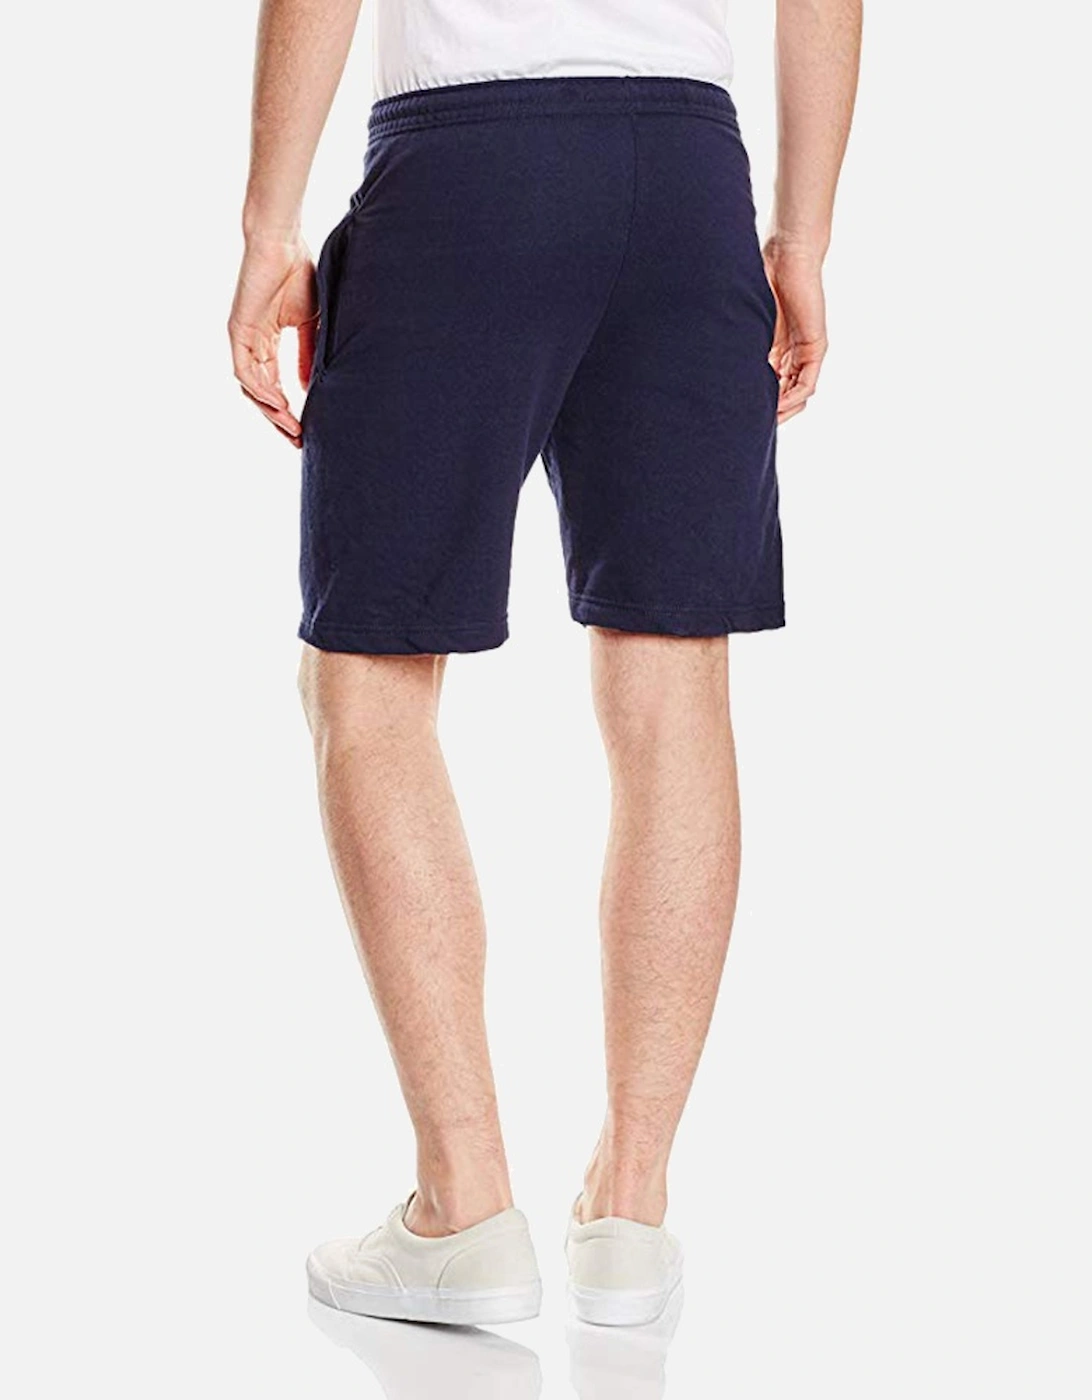 Mens Lightweight Casual Fleece Shorts (240 GSM)